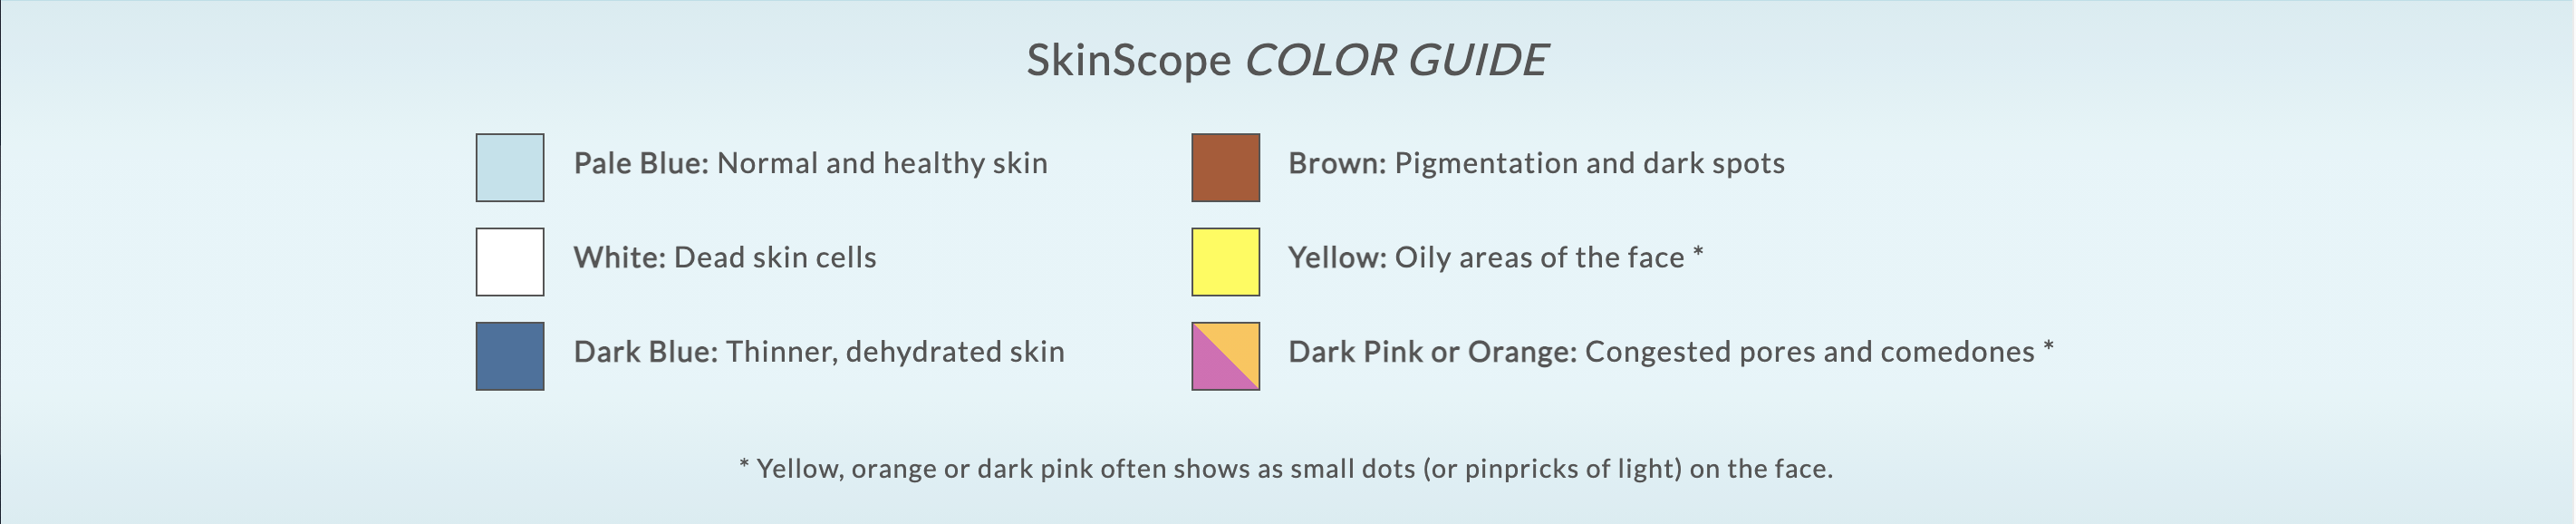 Skin Scope Color Guide